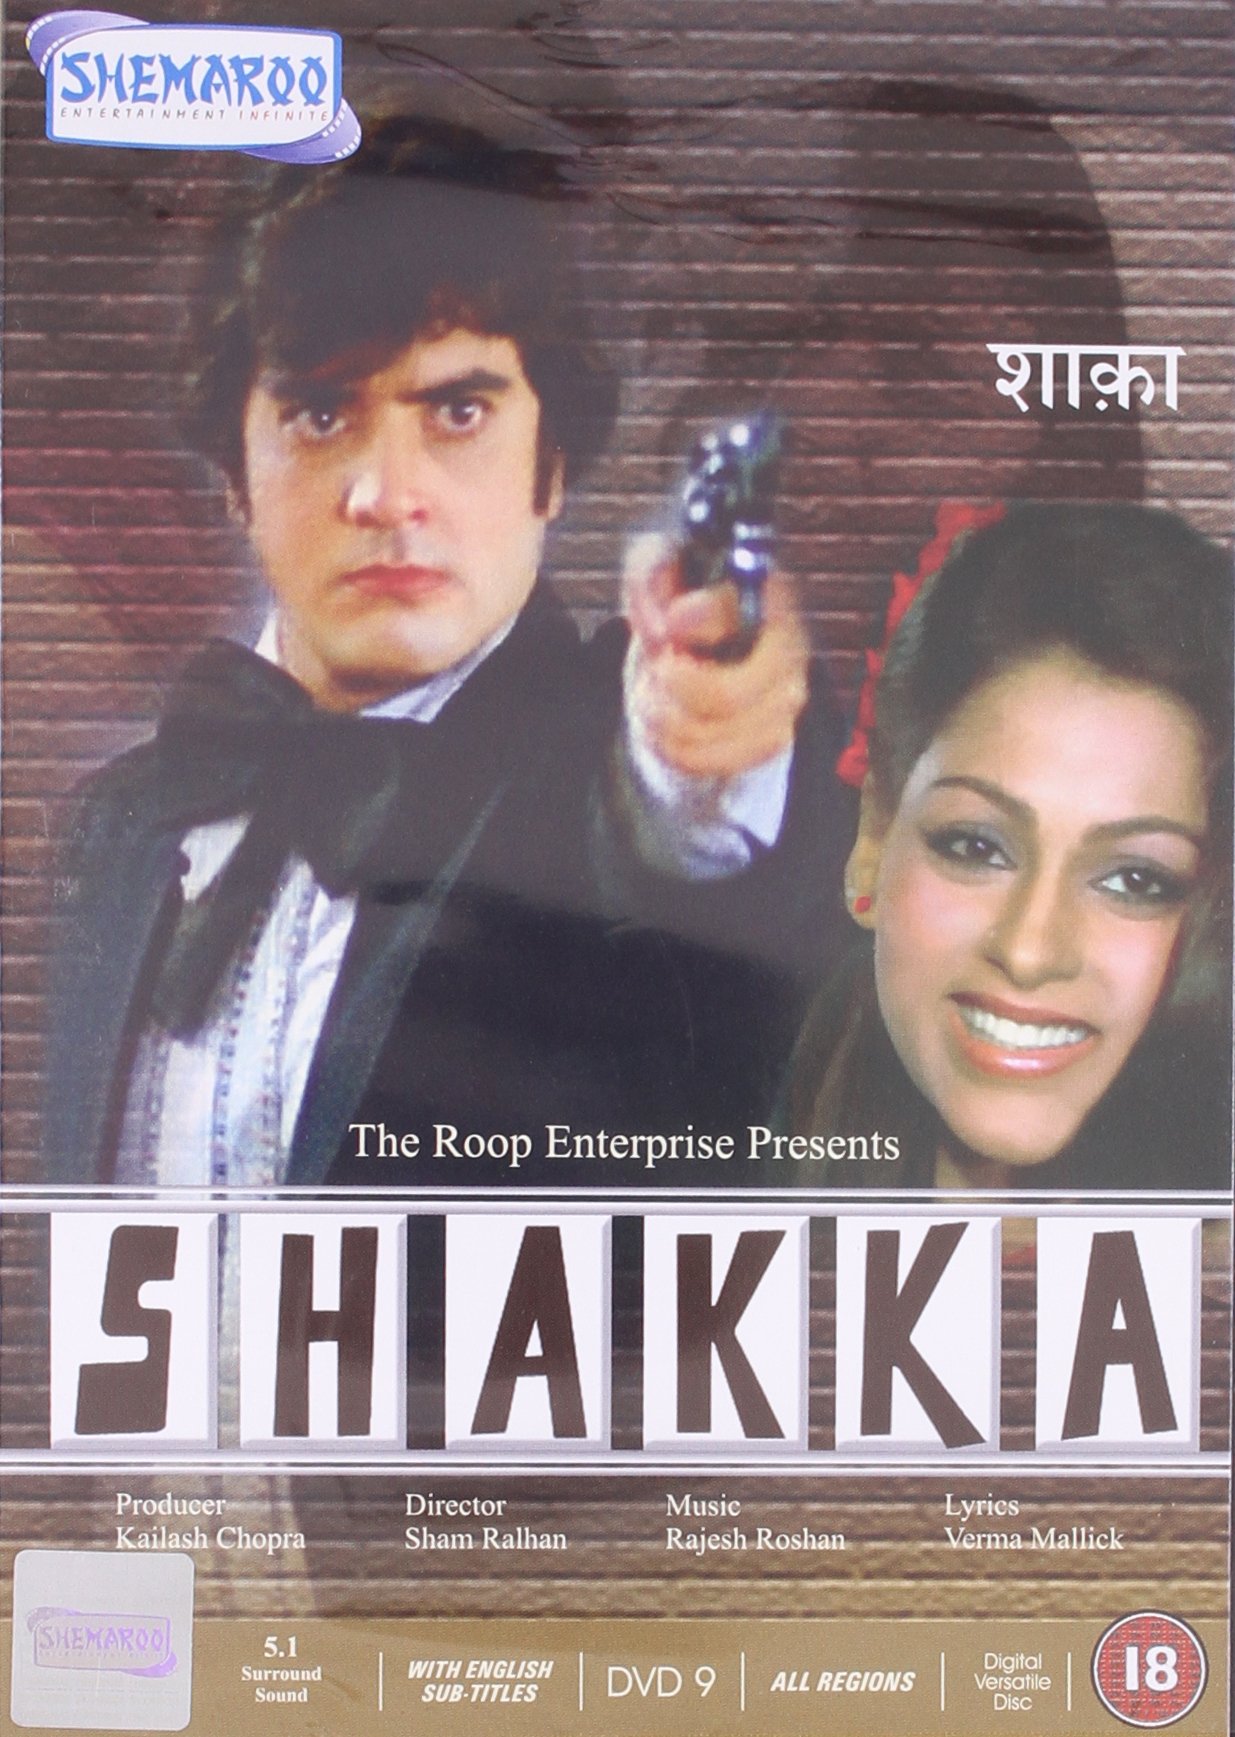 shakka-movie-purchase-or-watch-online